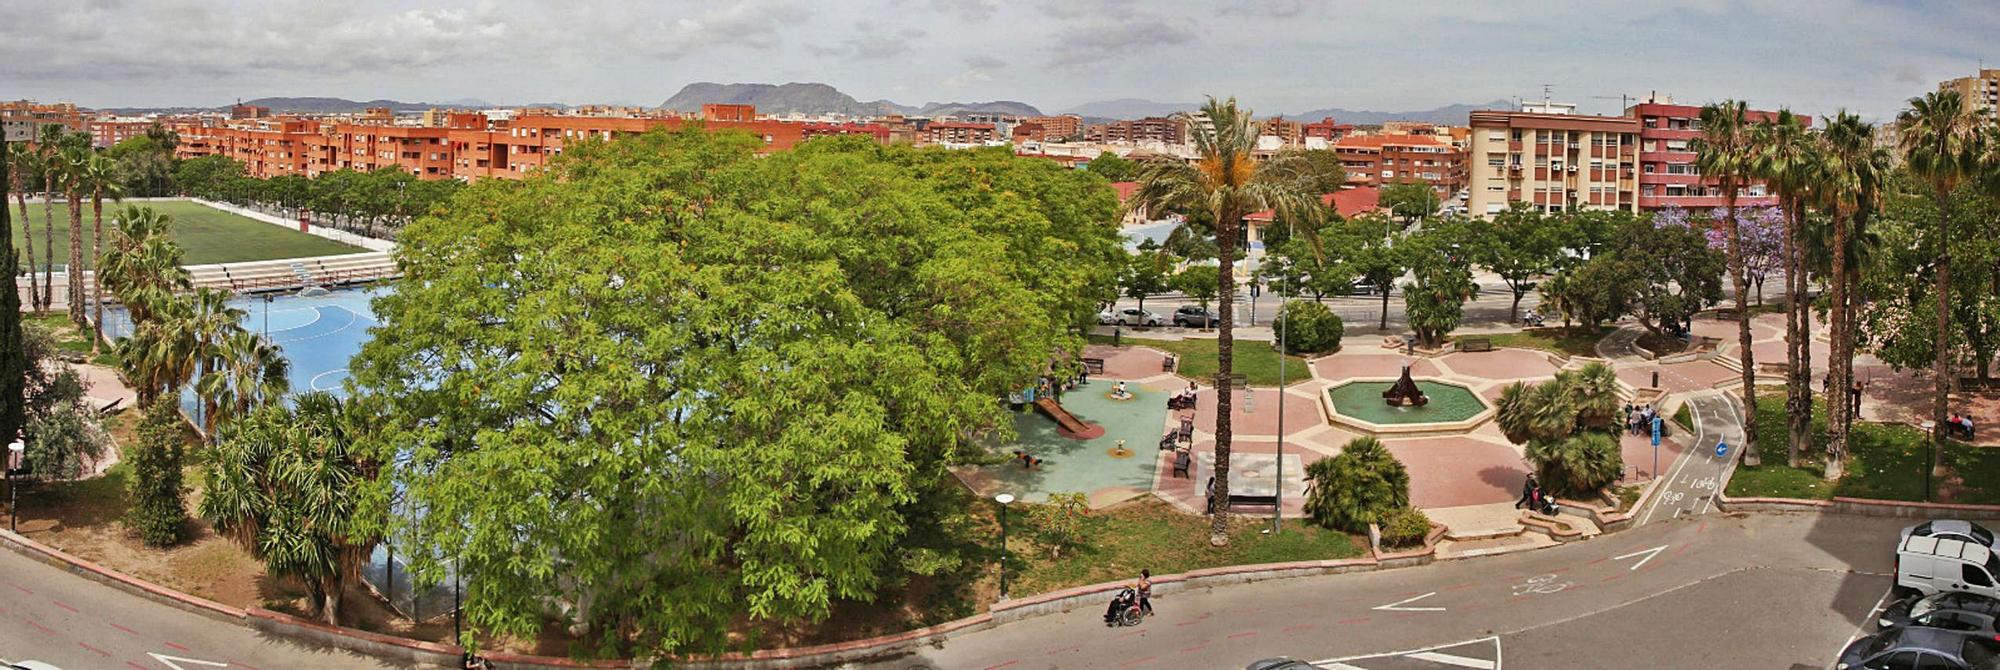 Vista panorámica del parque de San Blas, con la zona deportiva a la izquierda y la plaza de la zona norte a la derecha. 